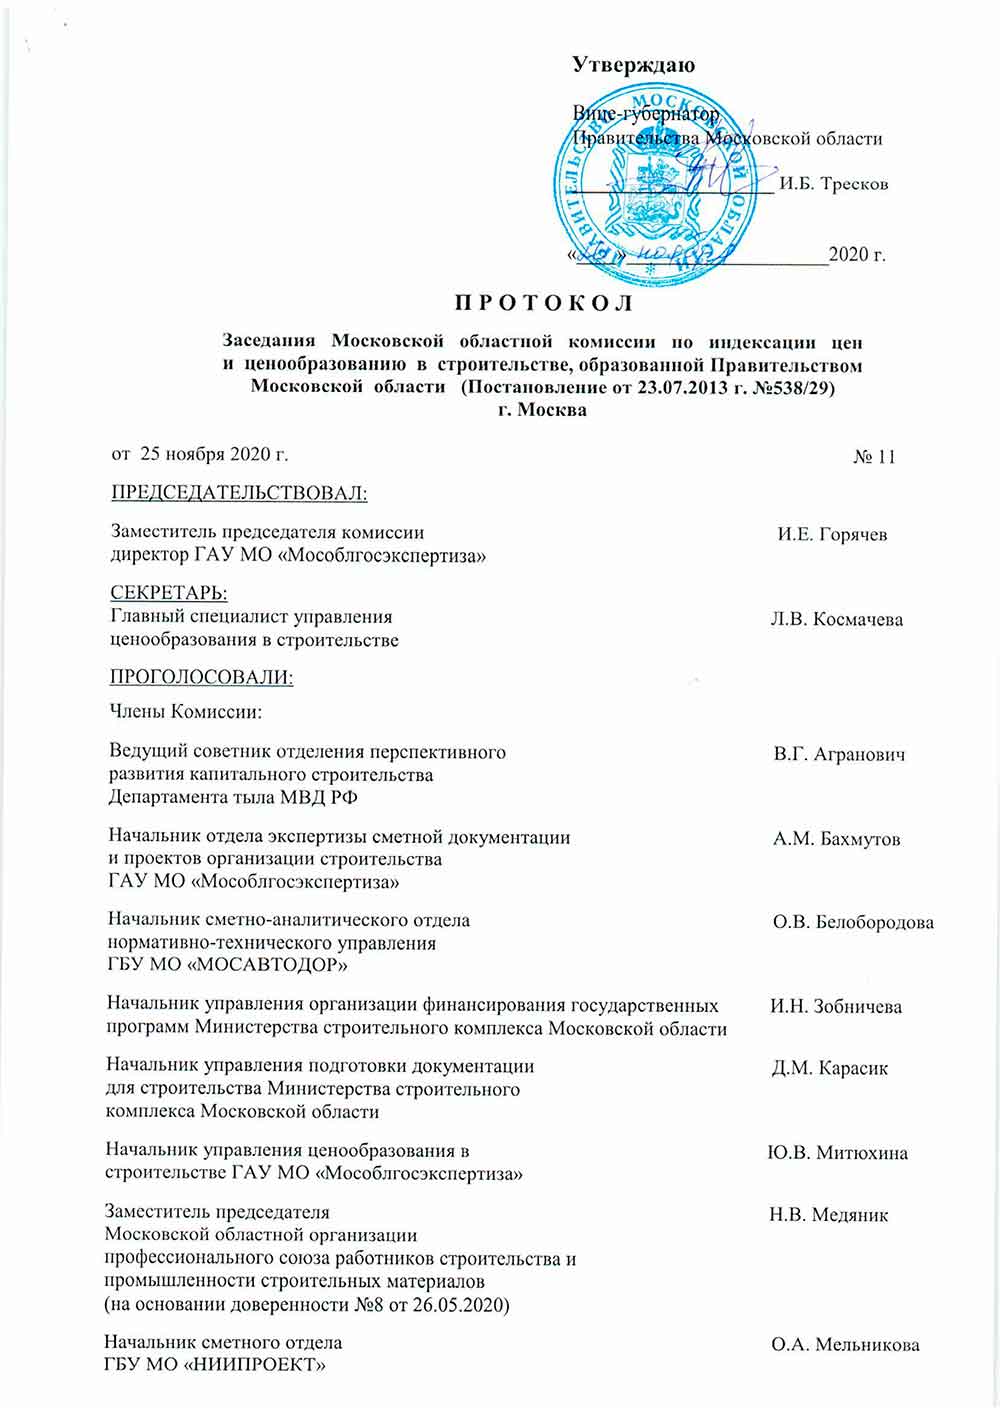 Протокол Мособлгосэкспертизы №11 от 25.11.2020 года